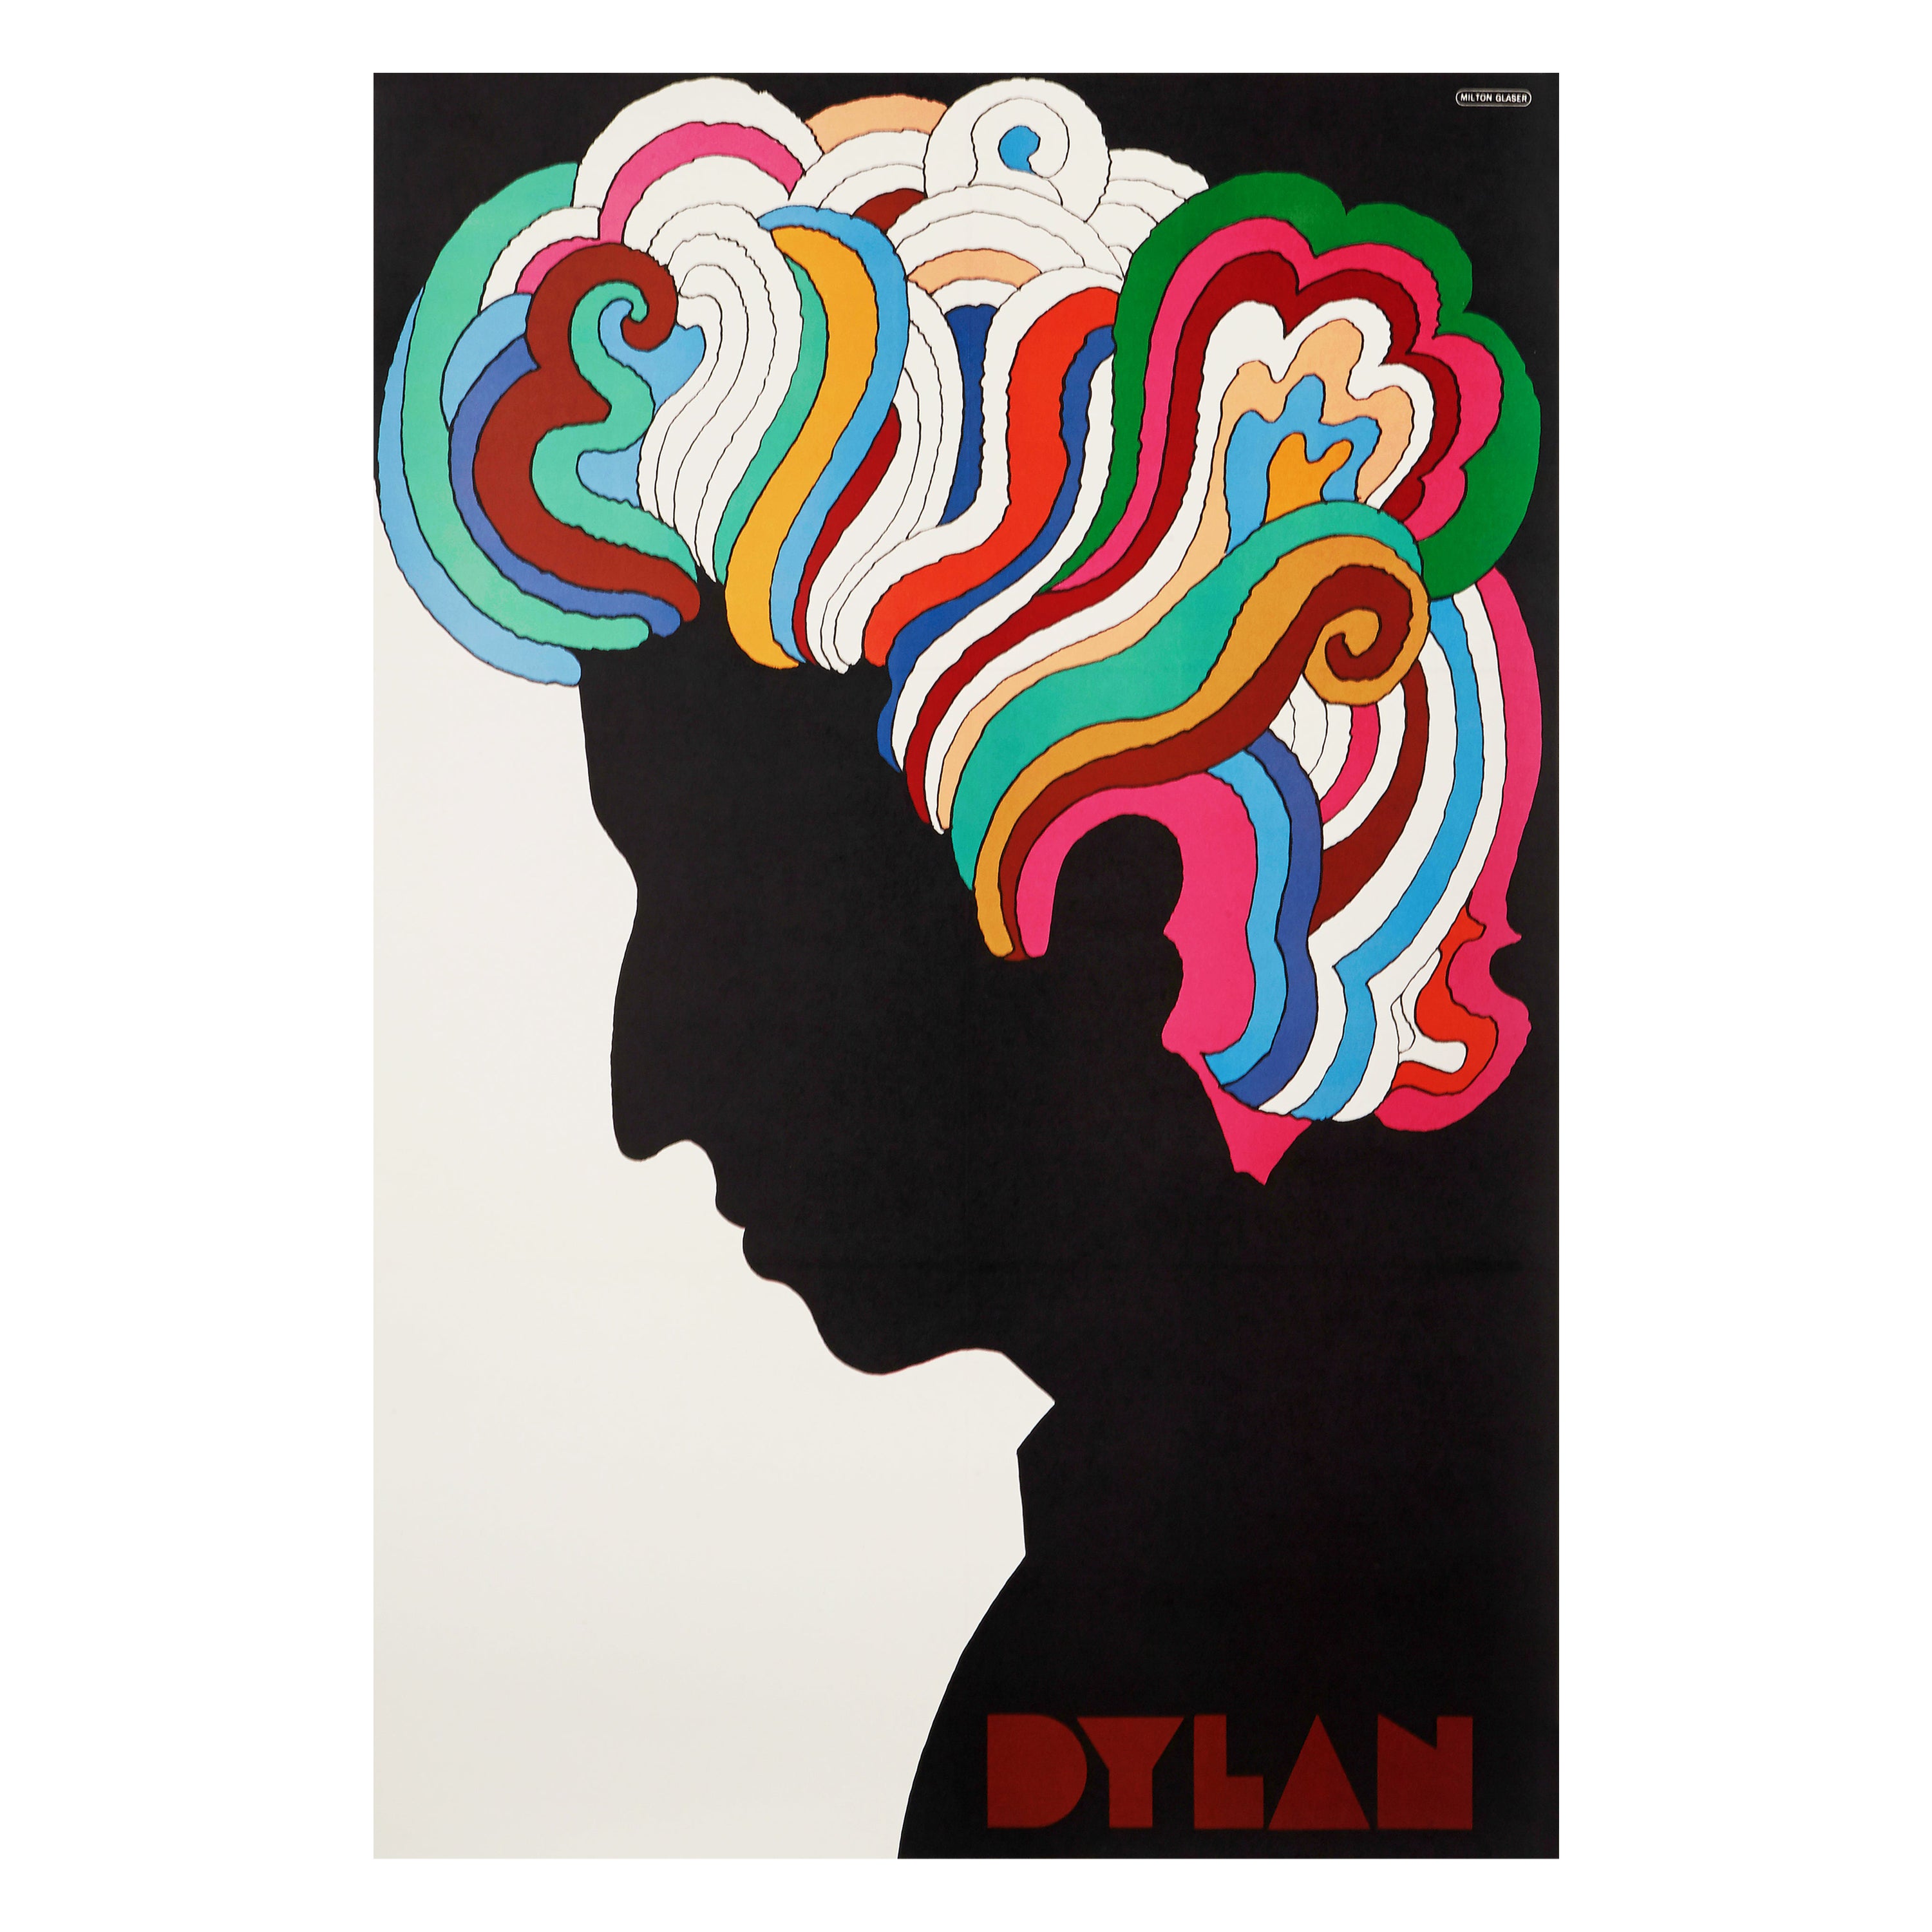 Bob Dylan Original Vintage Poster by Milton Glaser, 1967